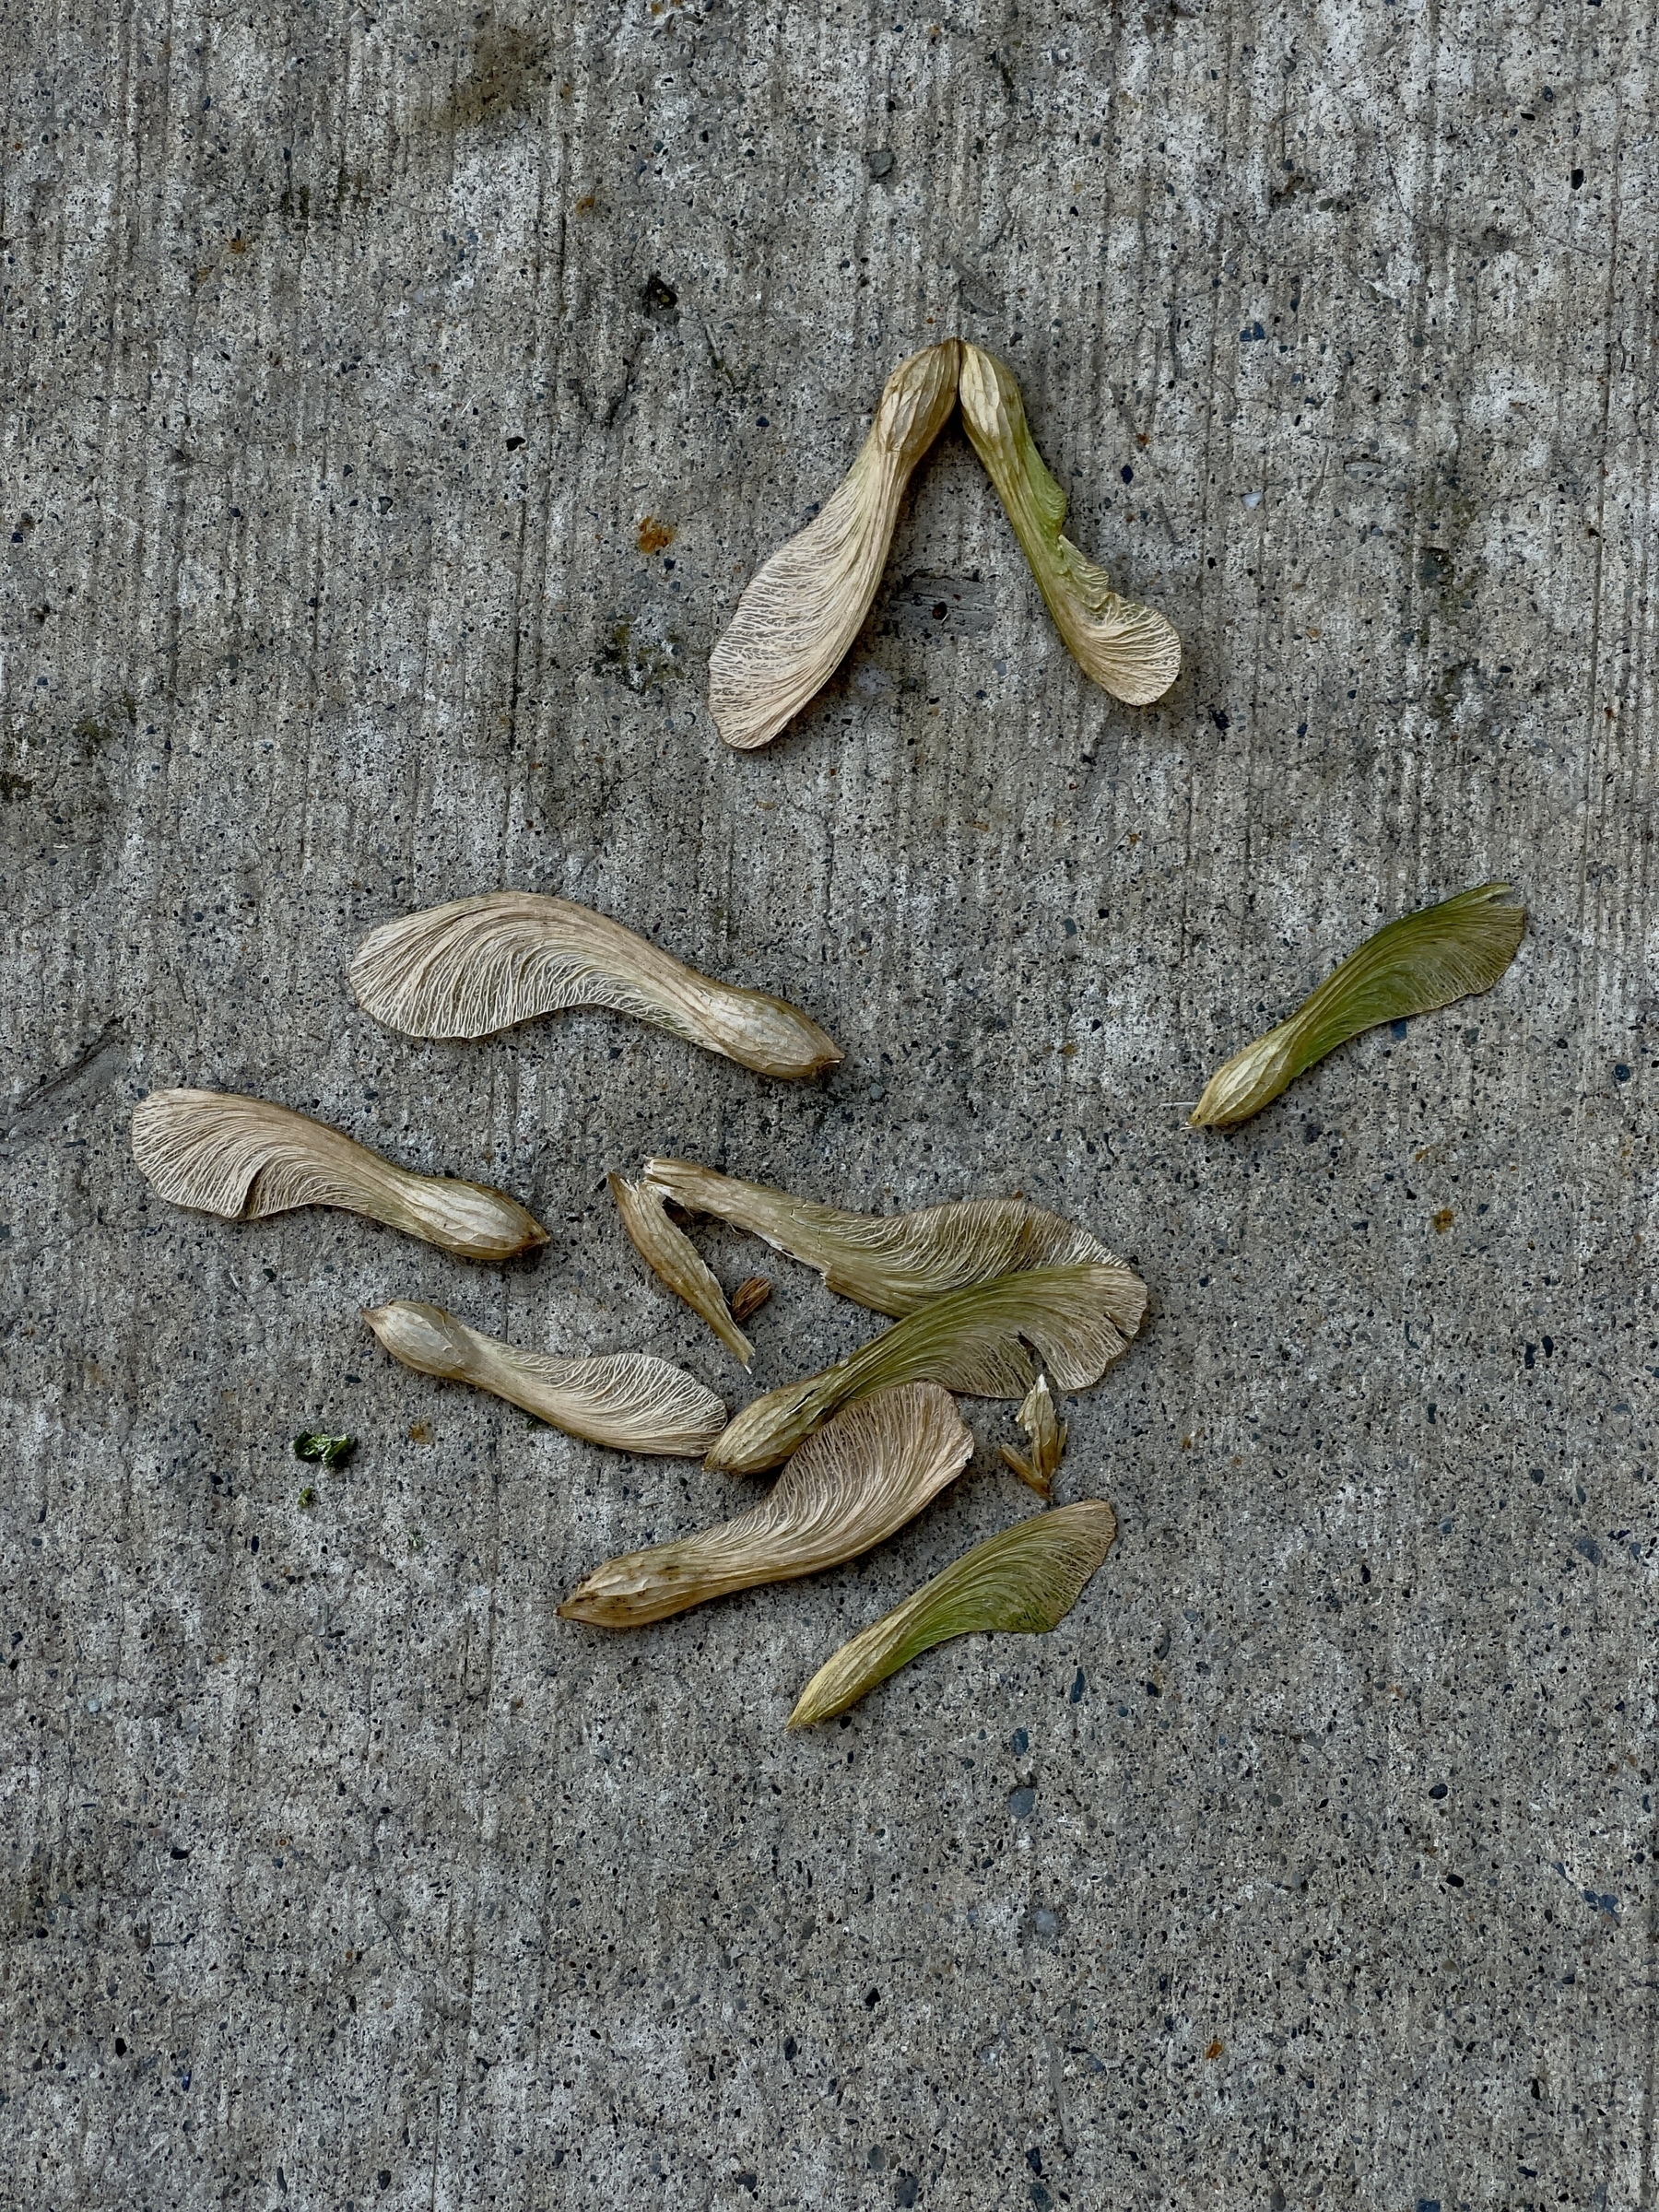 Maple seeds on concrete sidewalk.